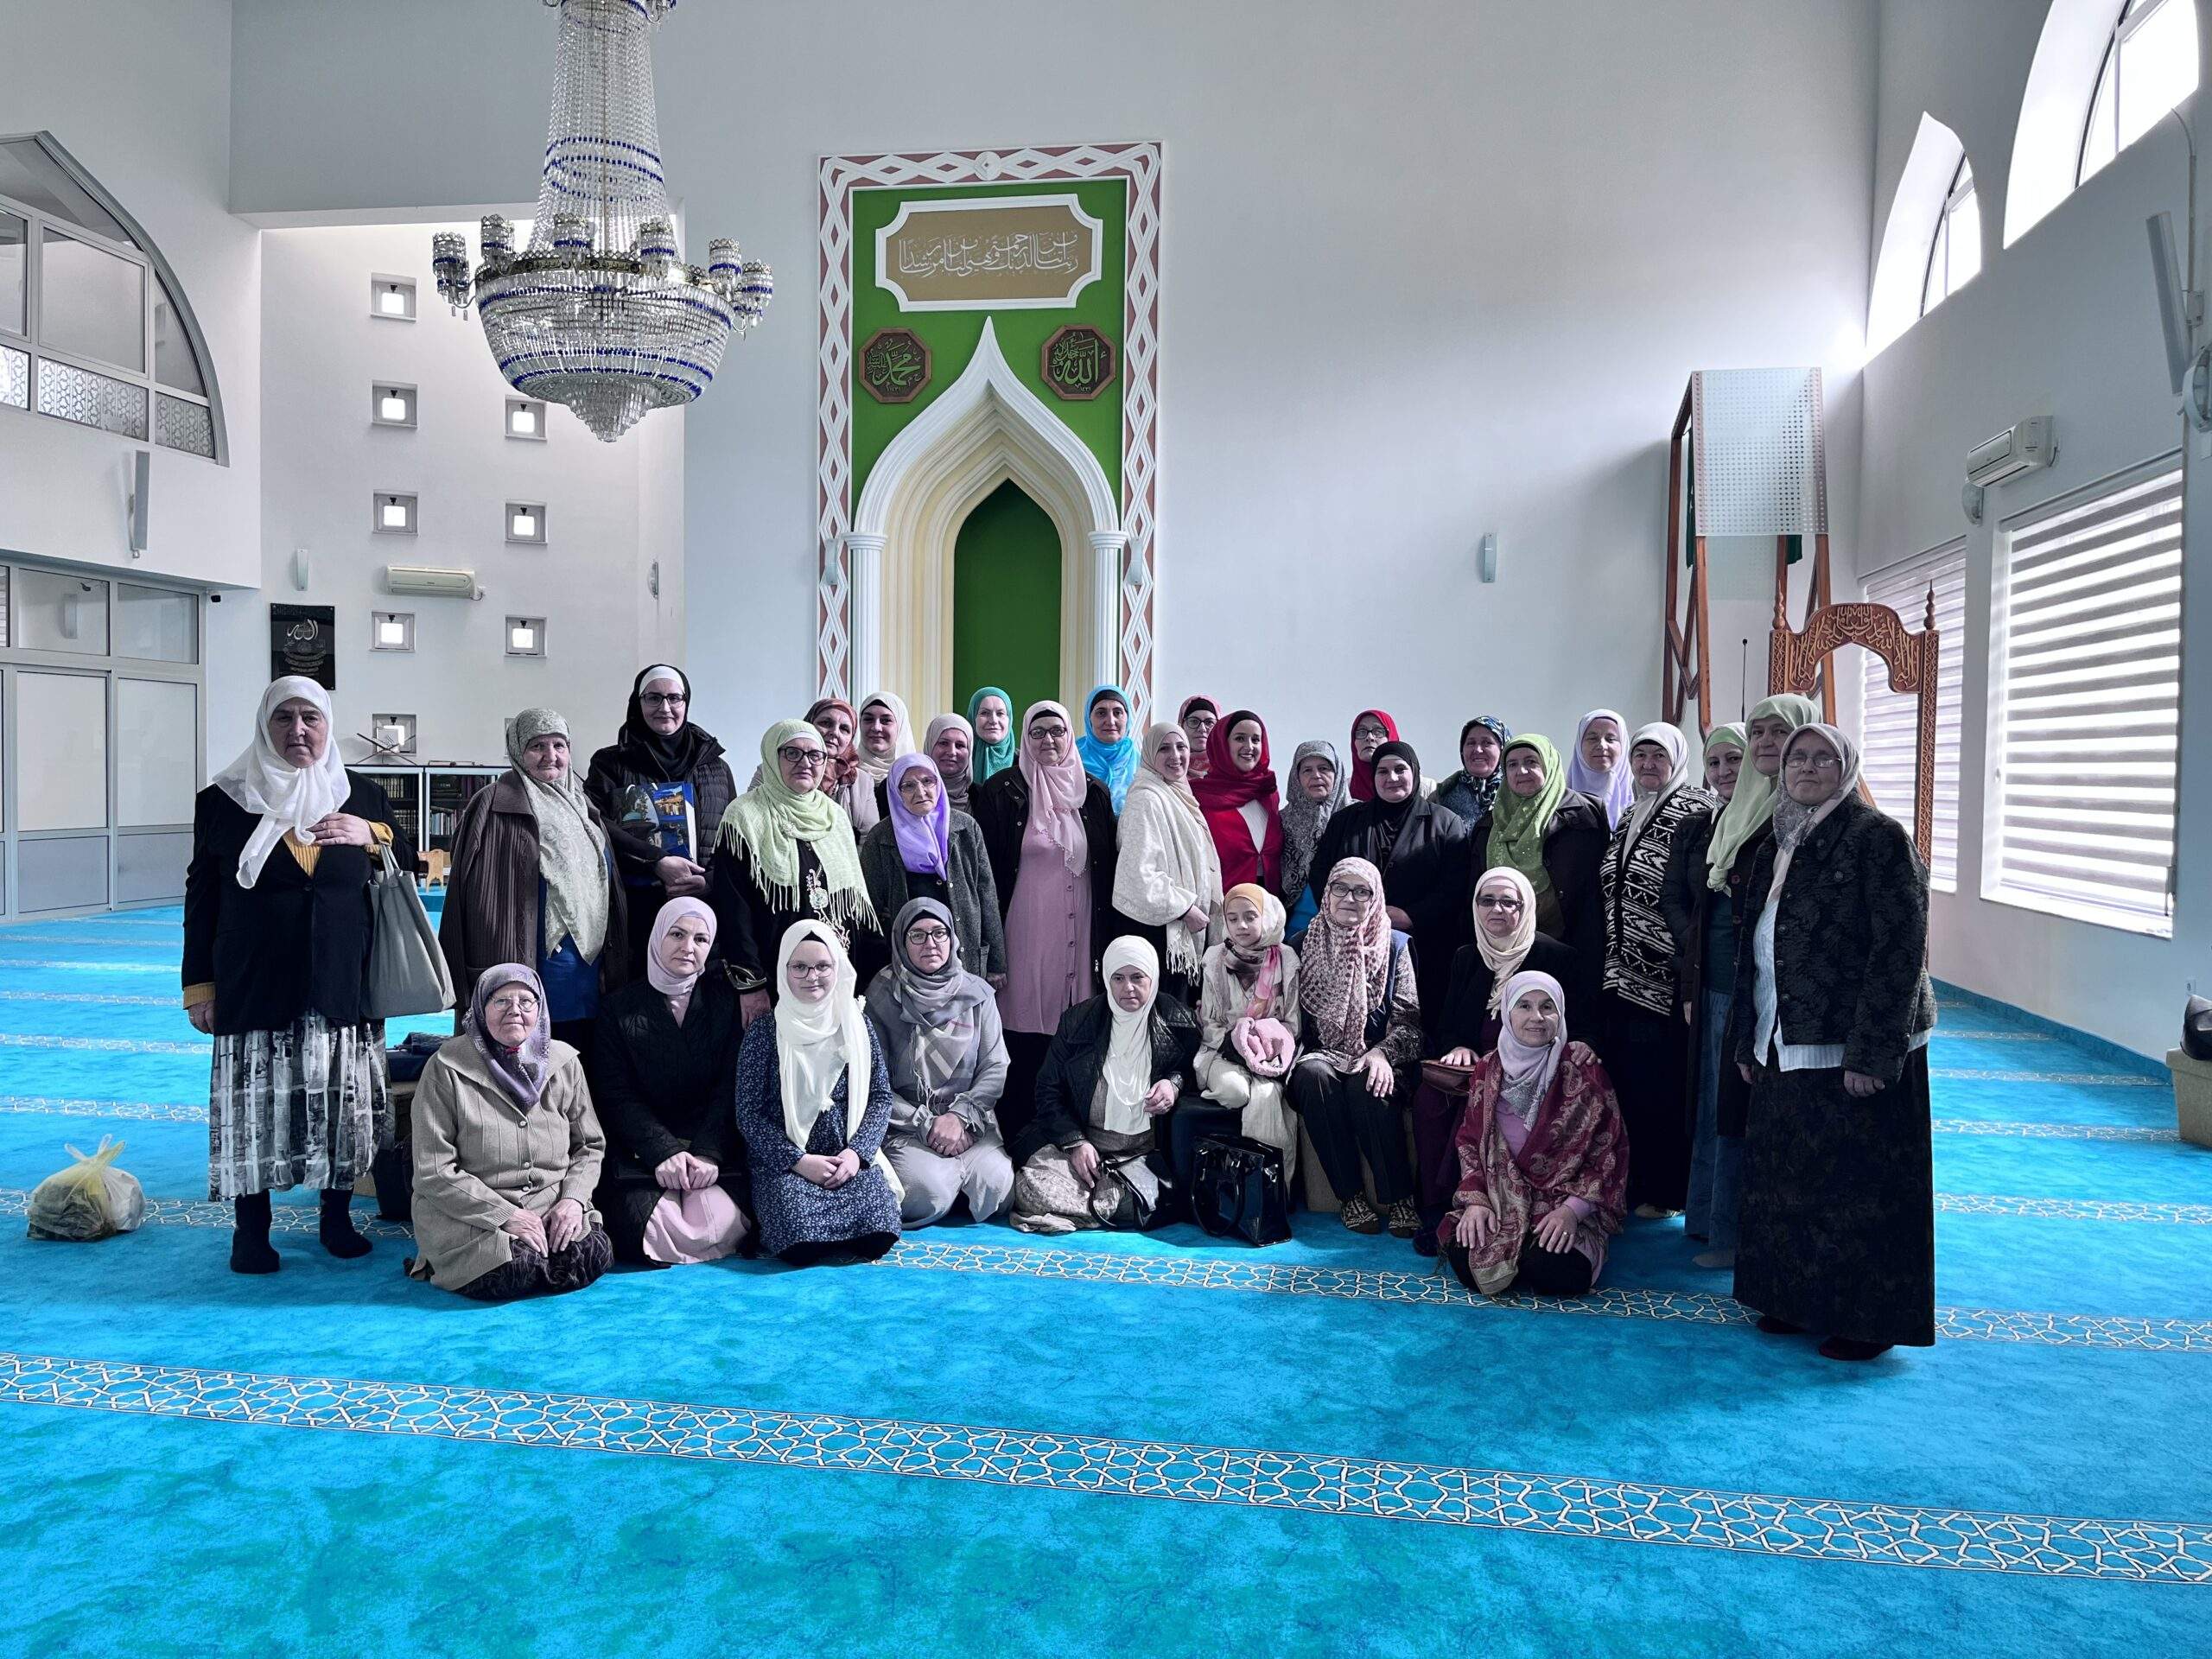 image_50740737-scaled.jpg - Ramazanska predavanja za žene u MIZ Sarajevo: Muallime i studentice o različitim teološkim temama